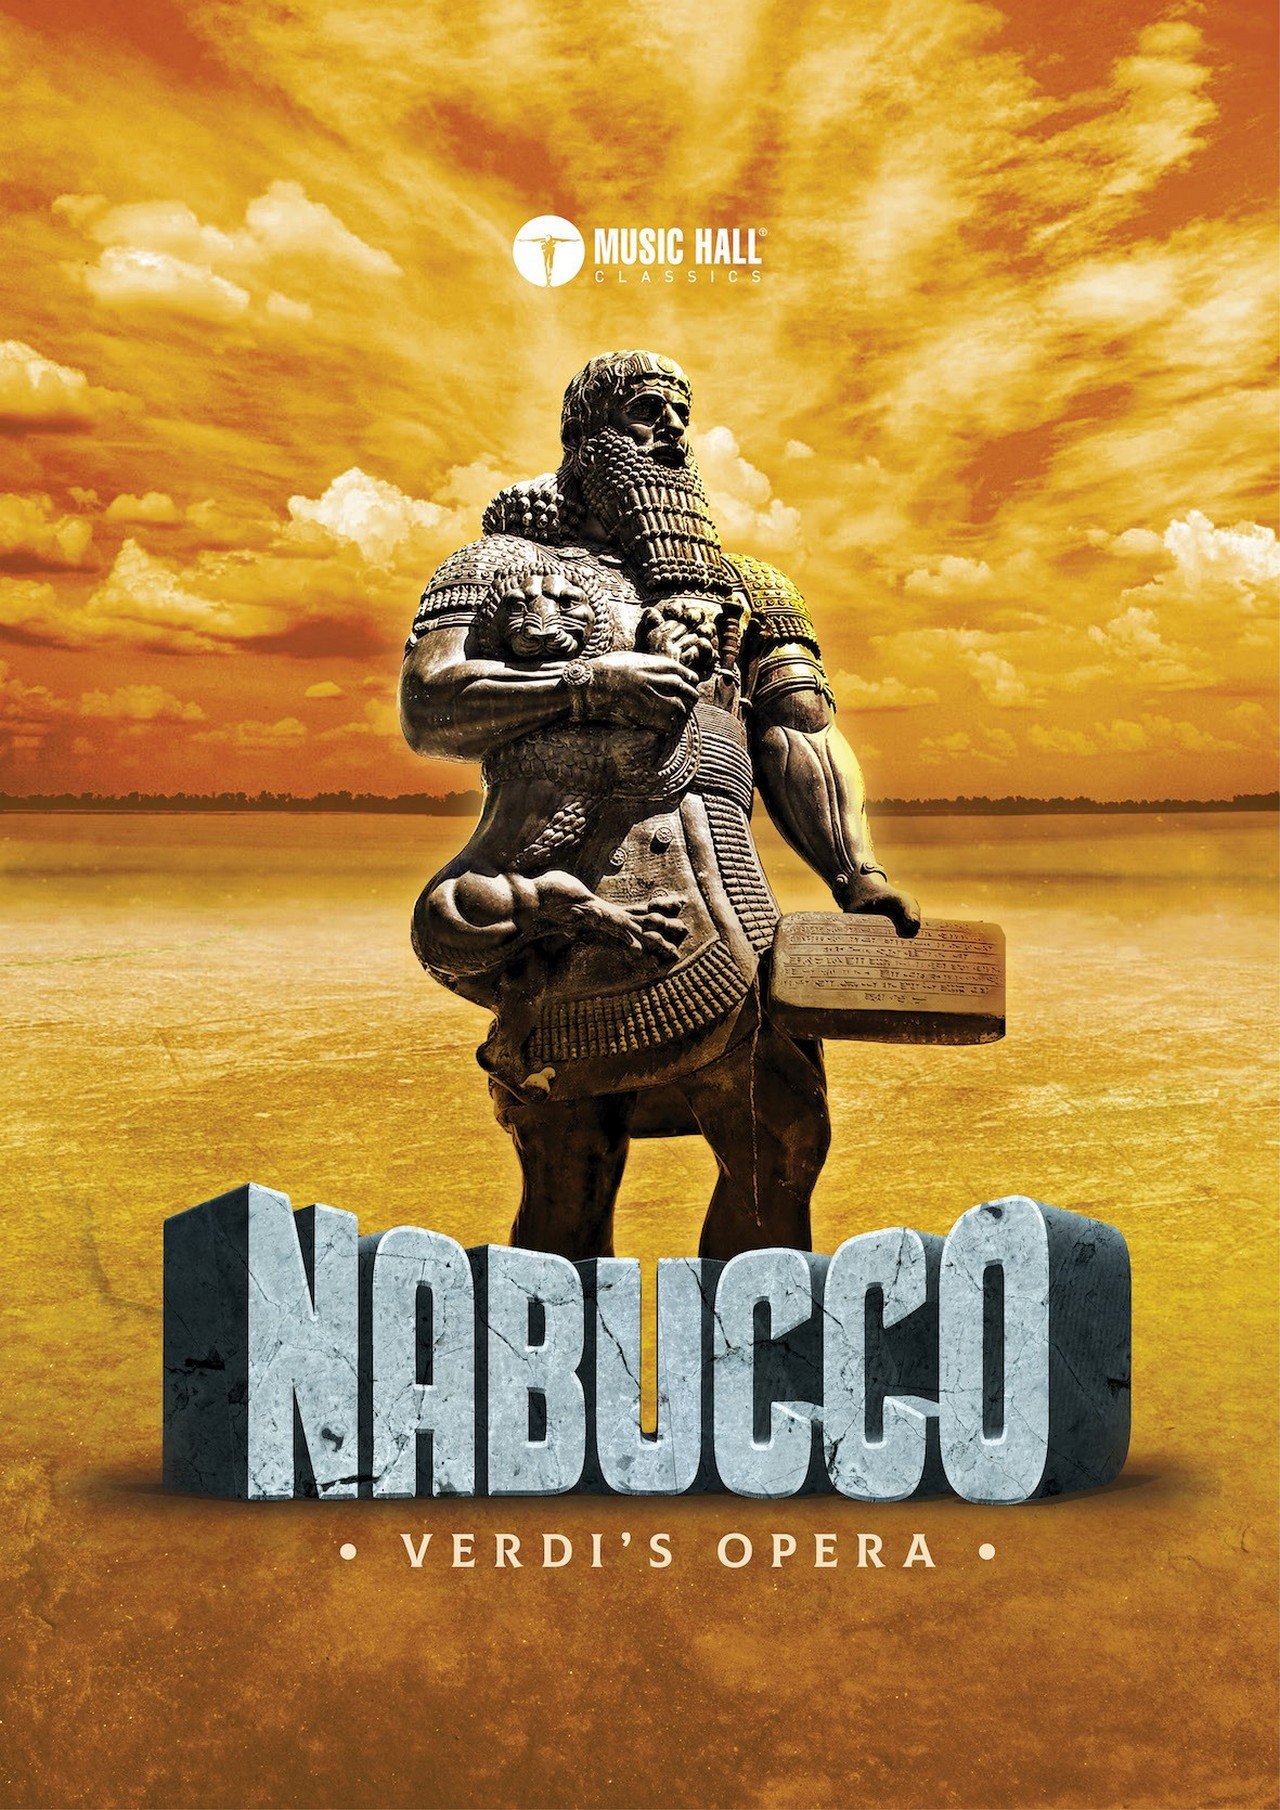 Music Hall Classics presenteert Verdi's Nabucco' in Antwerpen, Gent en Brugge - Nabucco 2.jpg